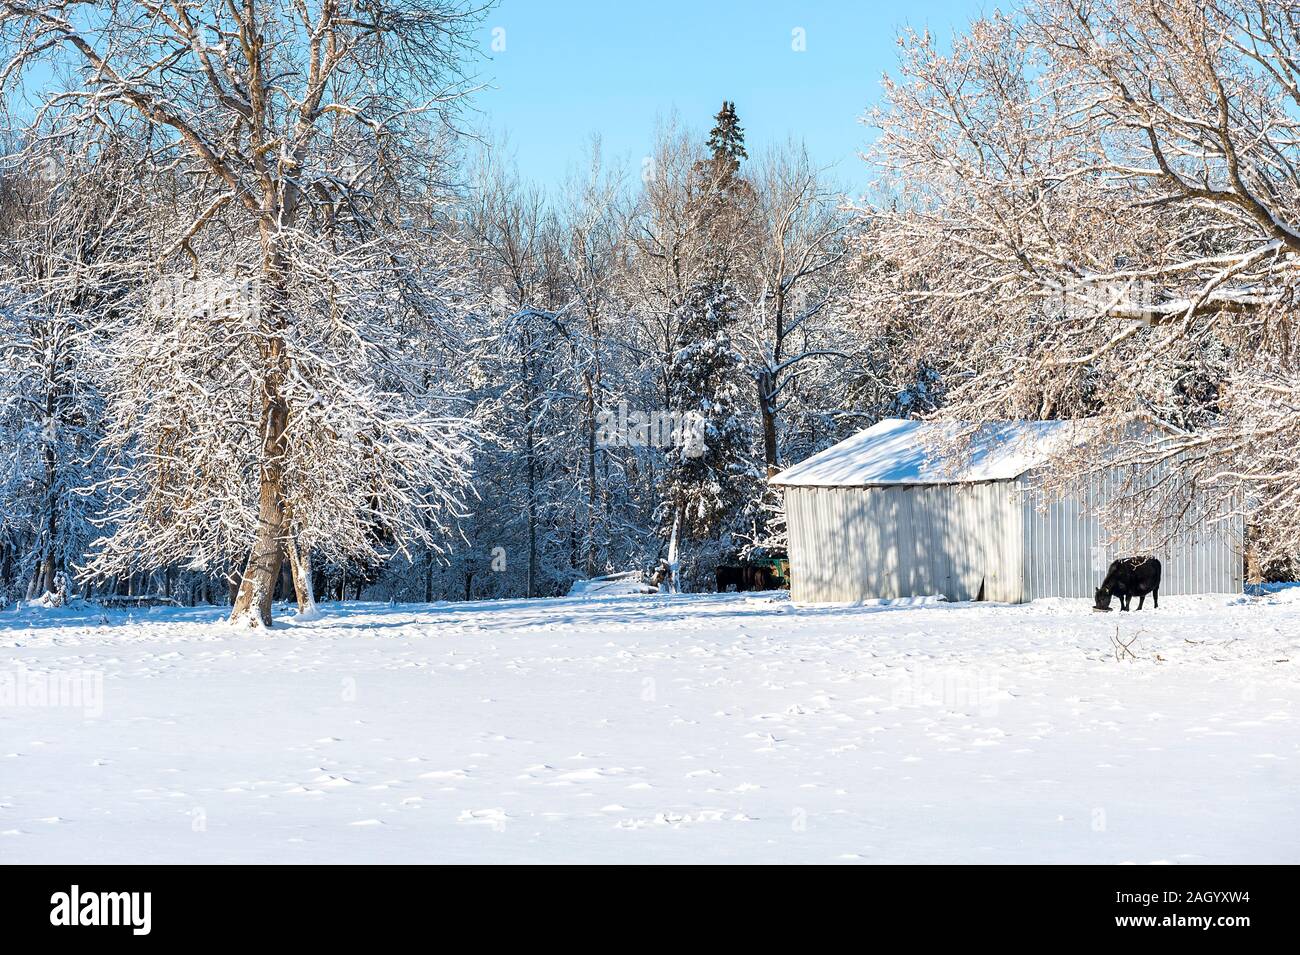 Vache noire se nourrit dans la neige a couvert la tranquillité Banque D'Images